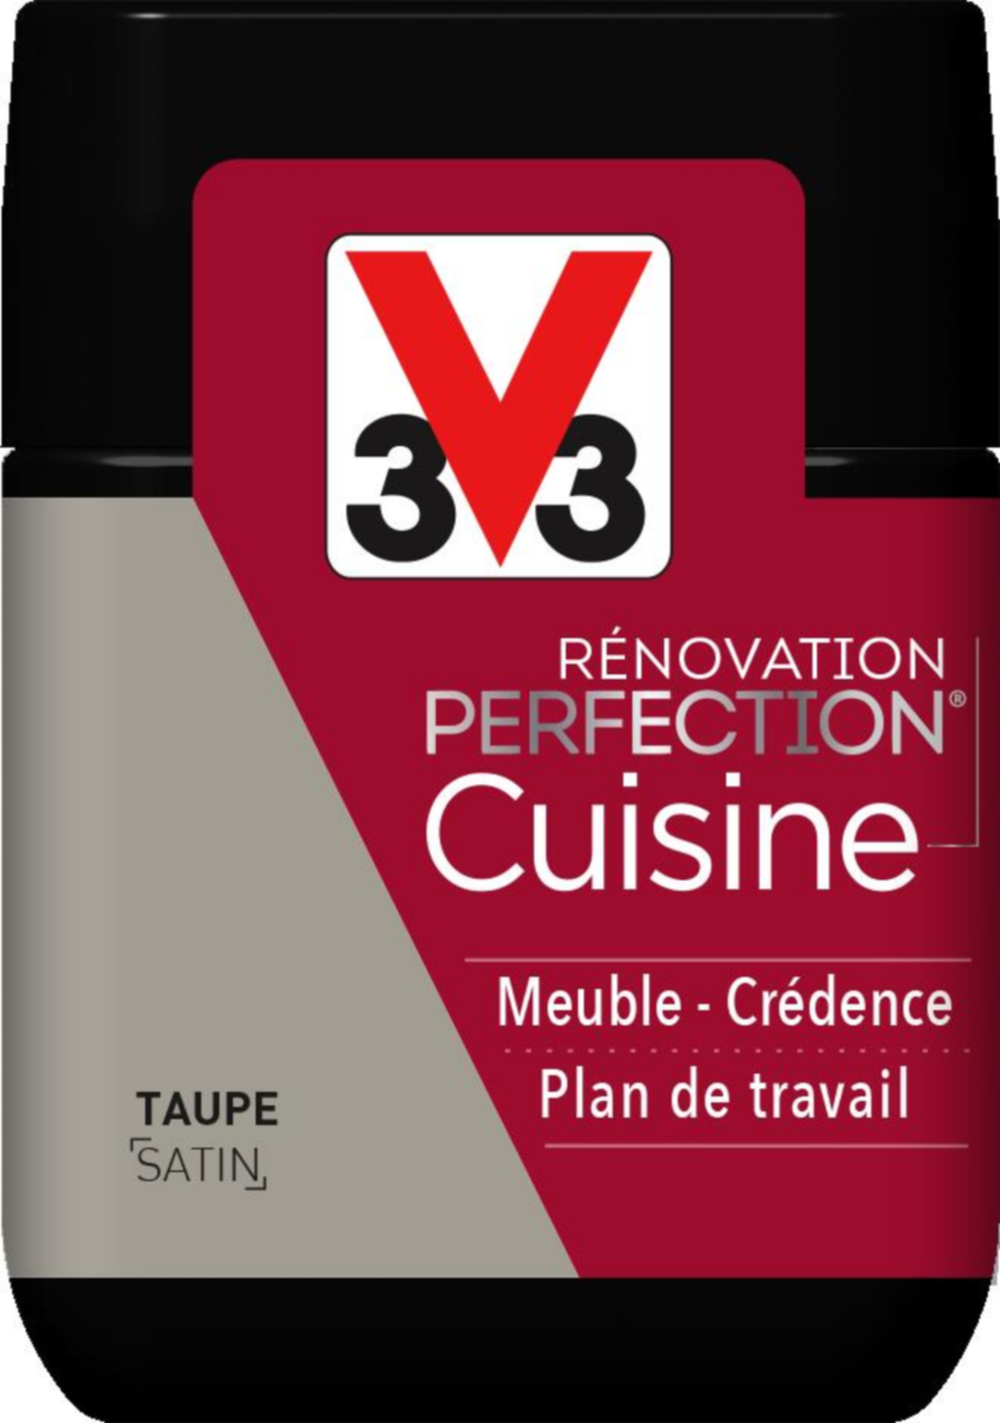 Peinture rénovation cuisine Perfection taupe satin testeur 75ml - V33